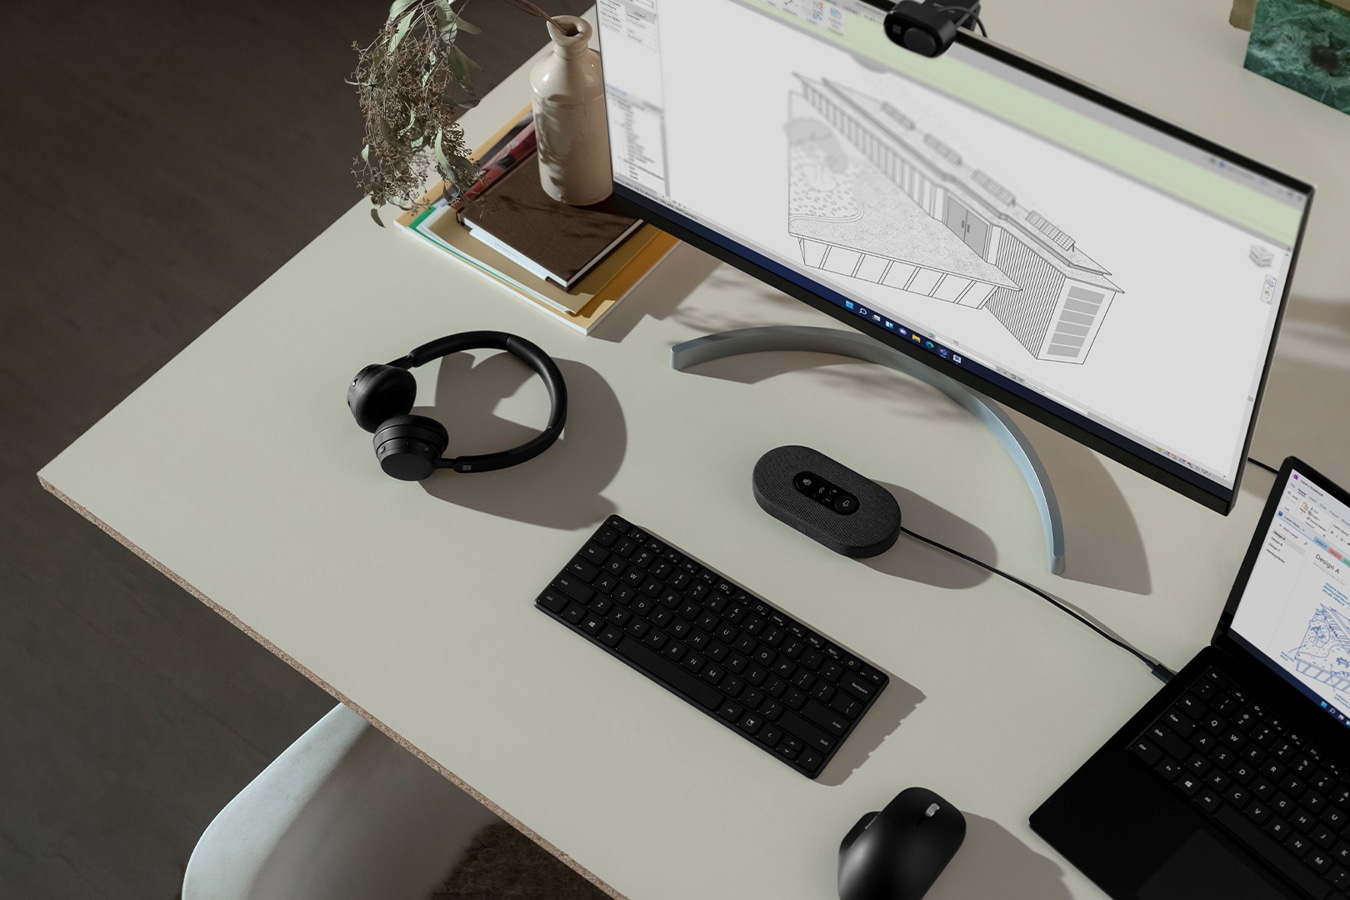 一台正外接显示器的 Surface 设备伫立在桌子上，四周还有各种 Surface 配件